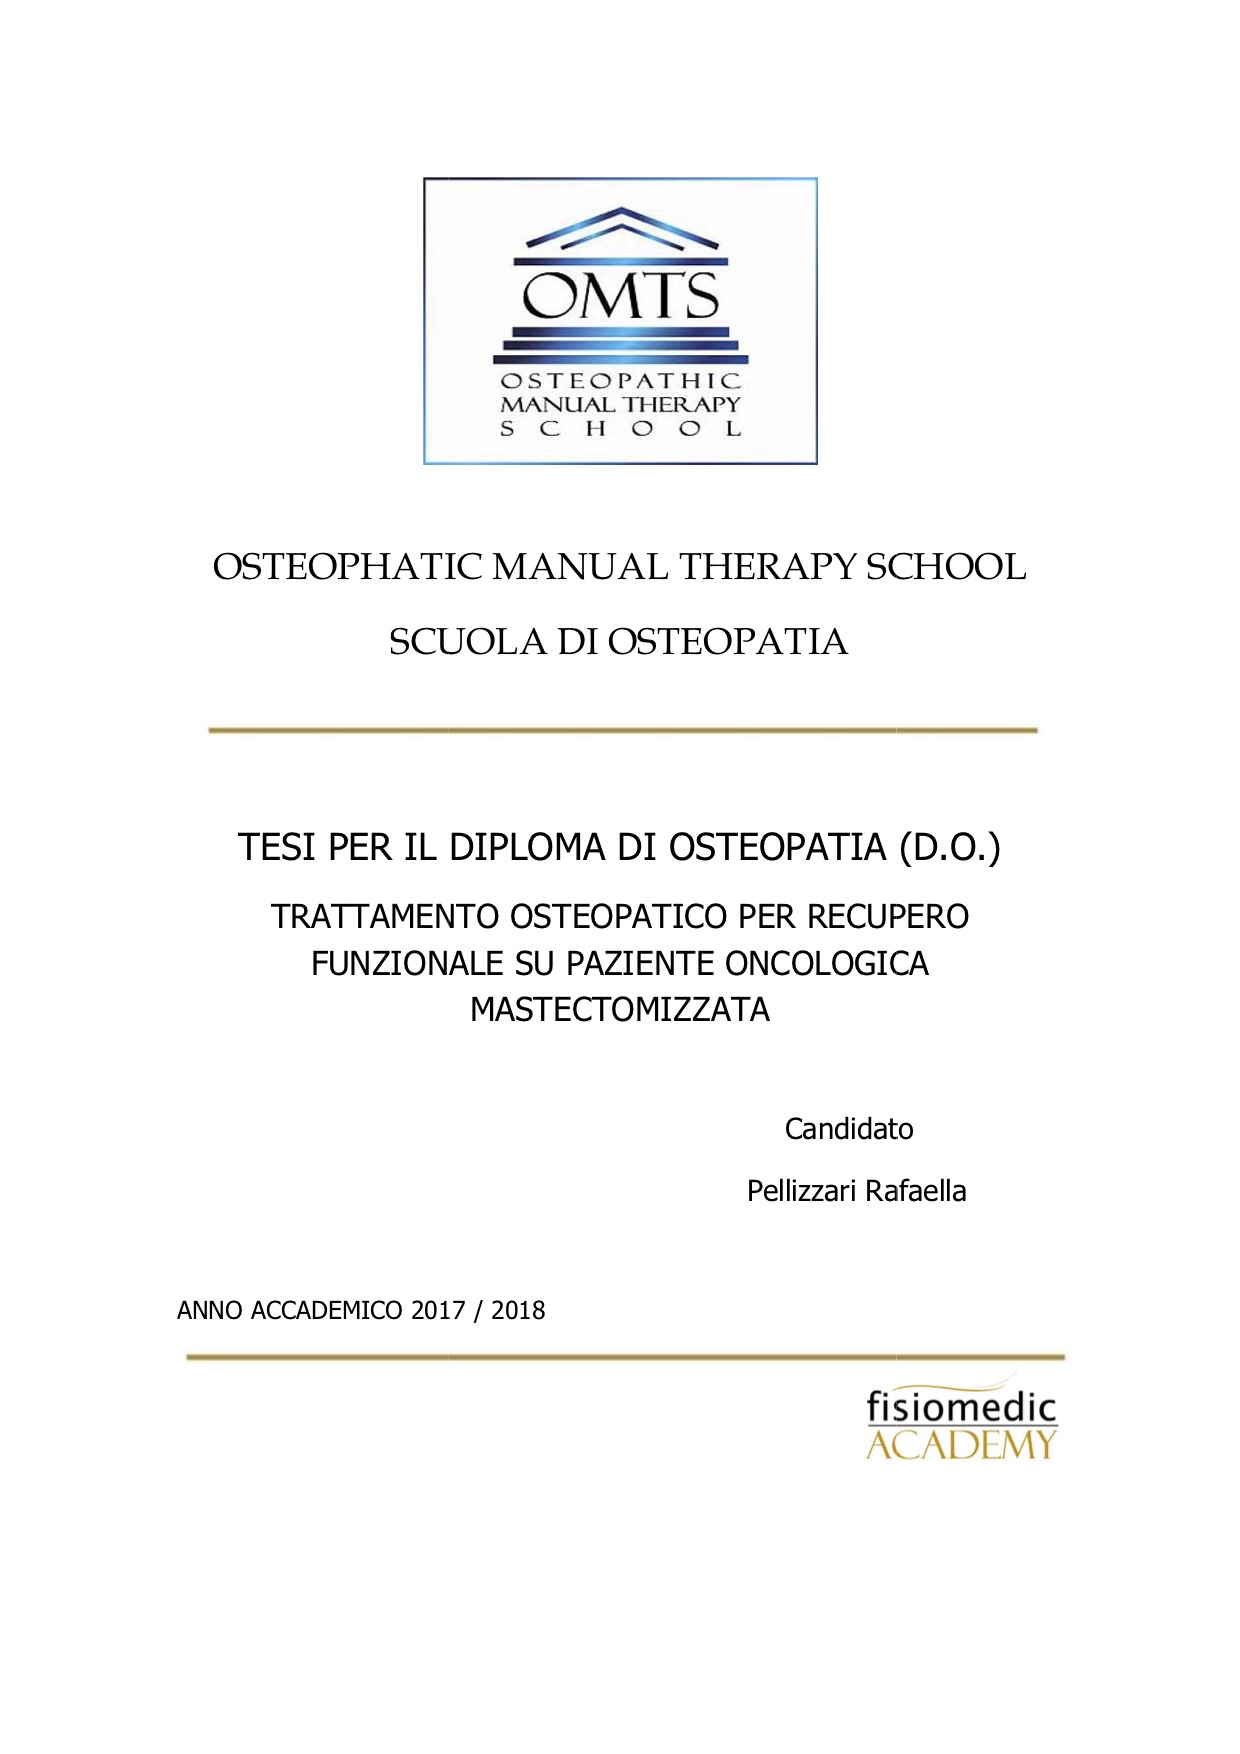 Rafaella Pellizzari Tesi Diploma Osteopatia 2018